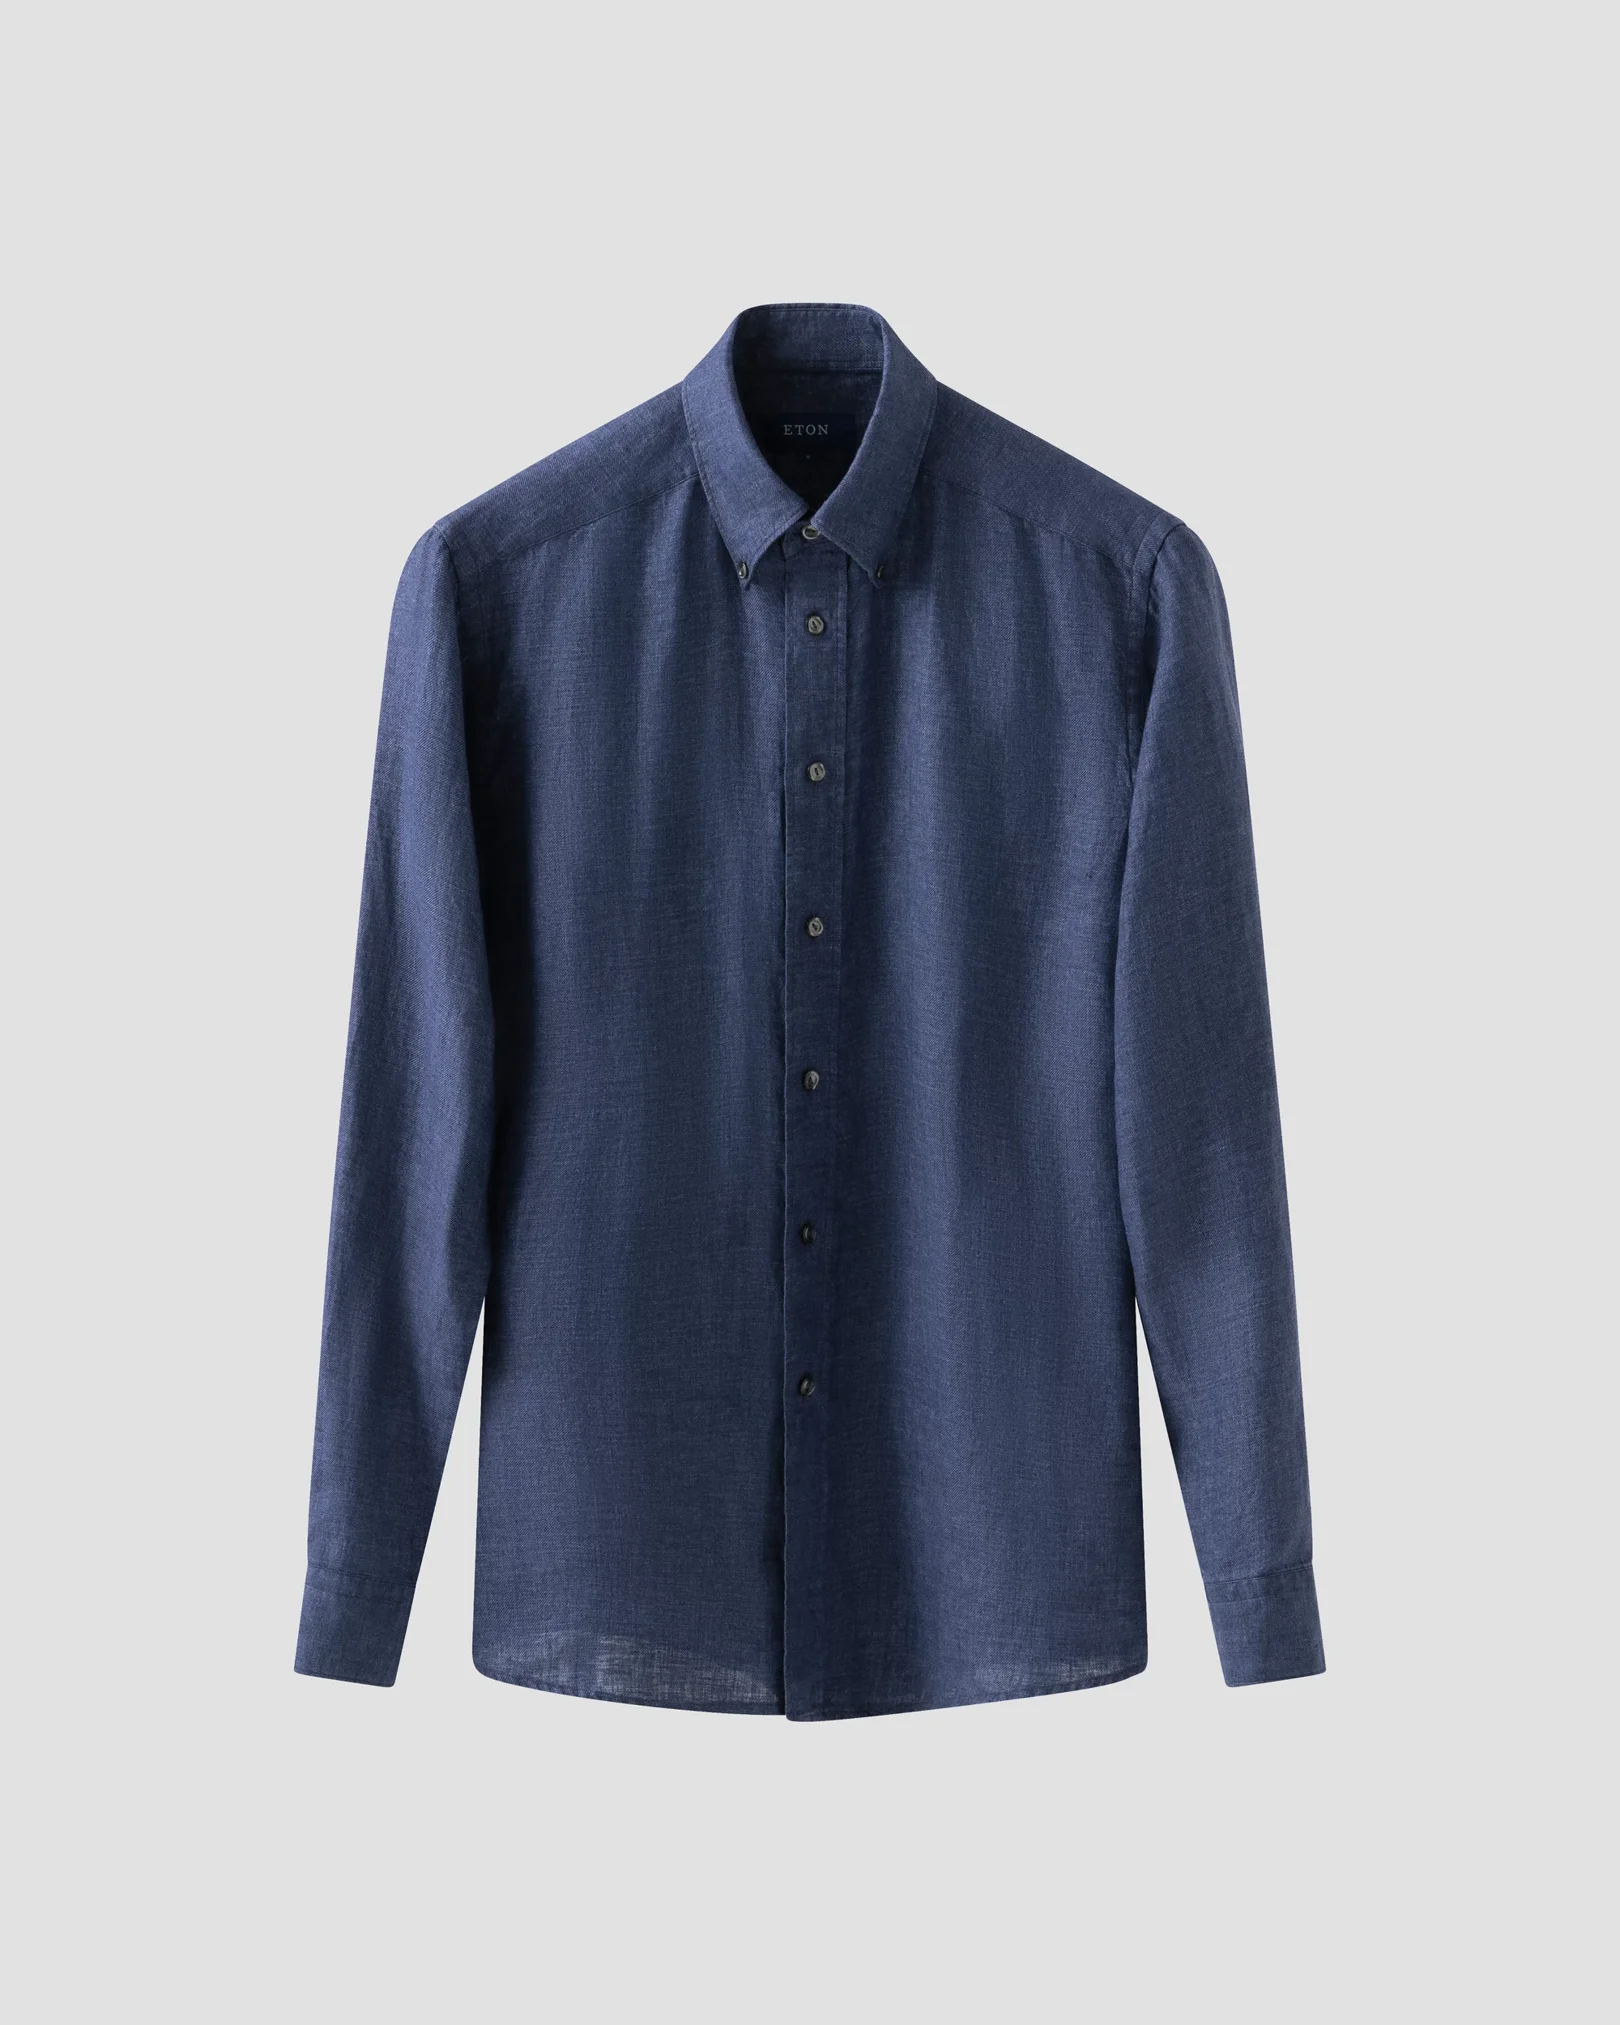 Check styling ideas for「Premium Linen Long-Sleeve Shirt、Linen